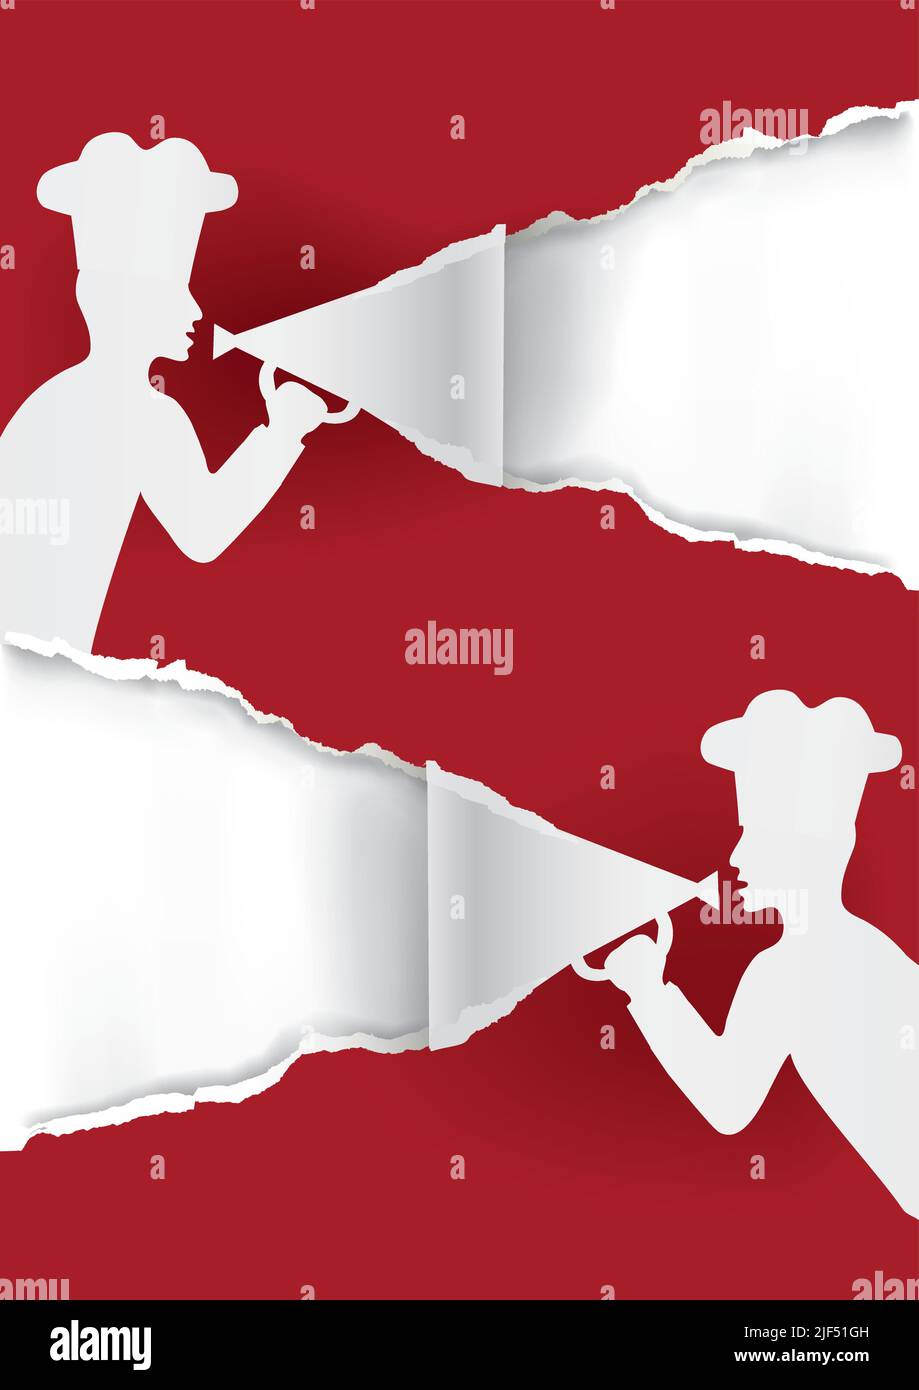 Chefs de papier avec mégaphone, fond de menu. Illustration d'un arrière-plan en papier déchiré rouge avec des silhouettes masculines stylisées et un chapeau de chef. Illustration de Vecteur